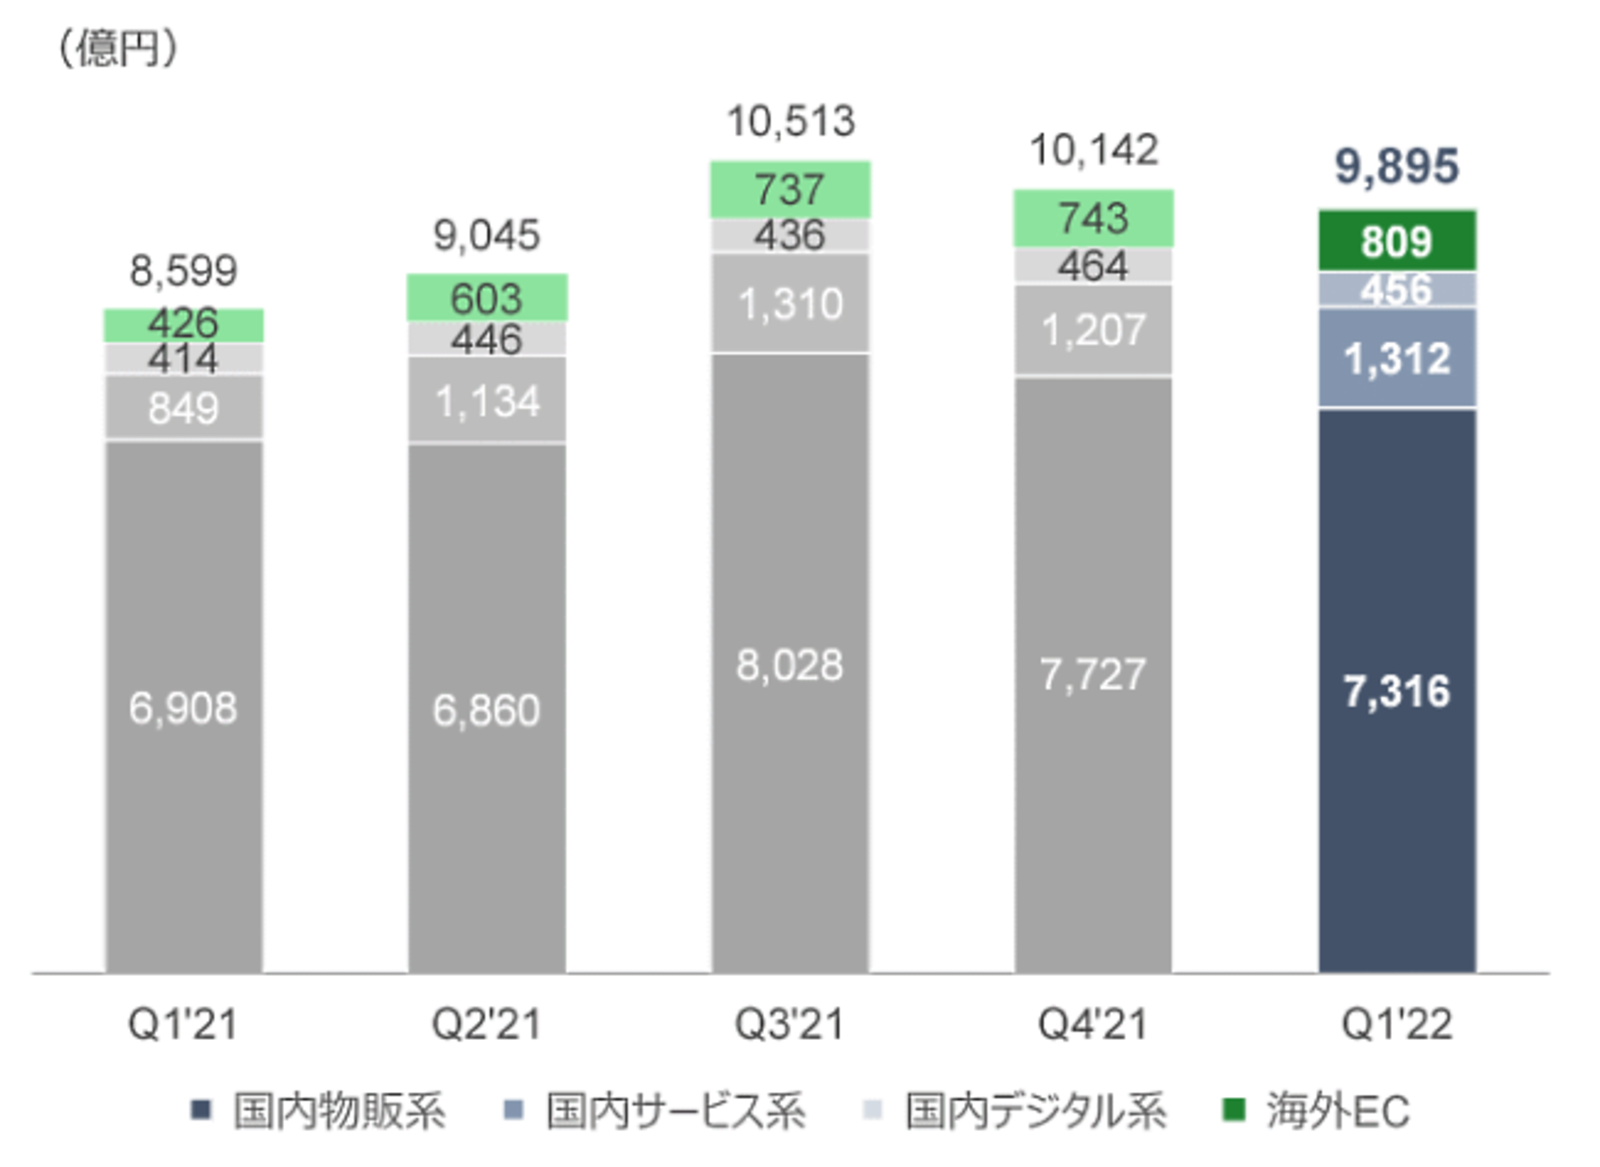 【Zホールディングス2022年度1Q】eコマース取扱高は15.1%増の約